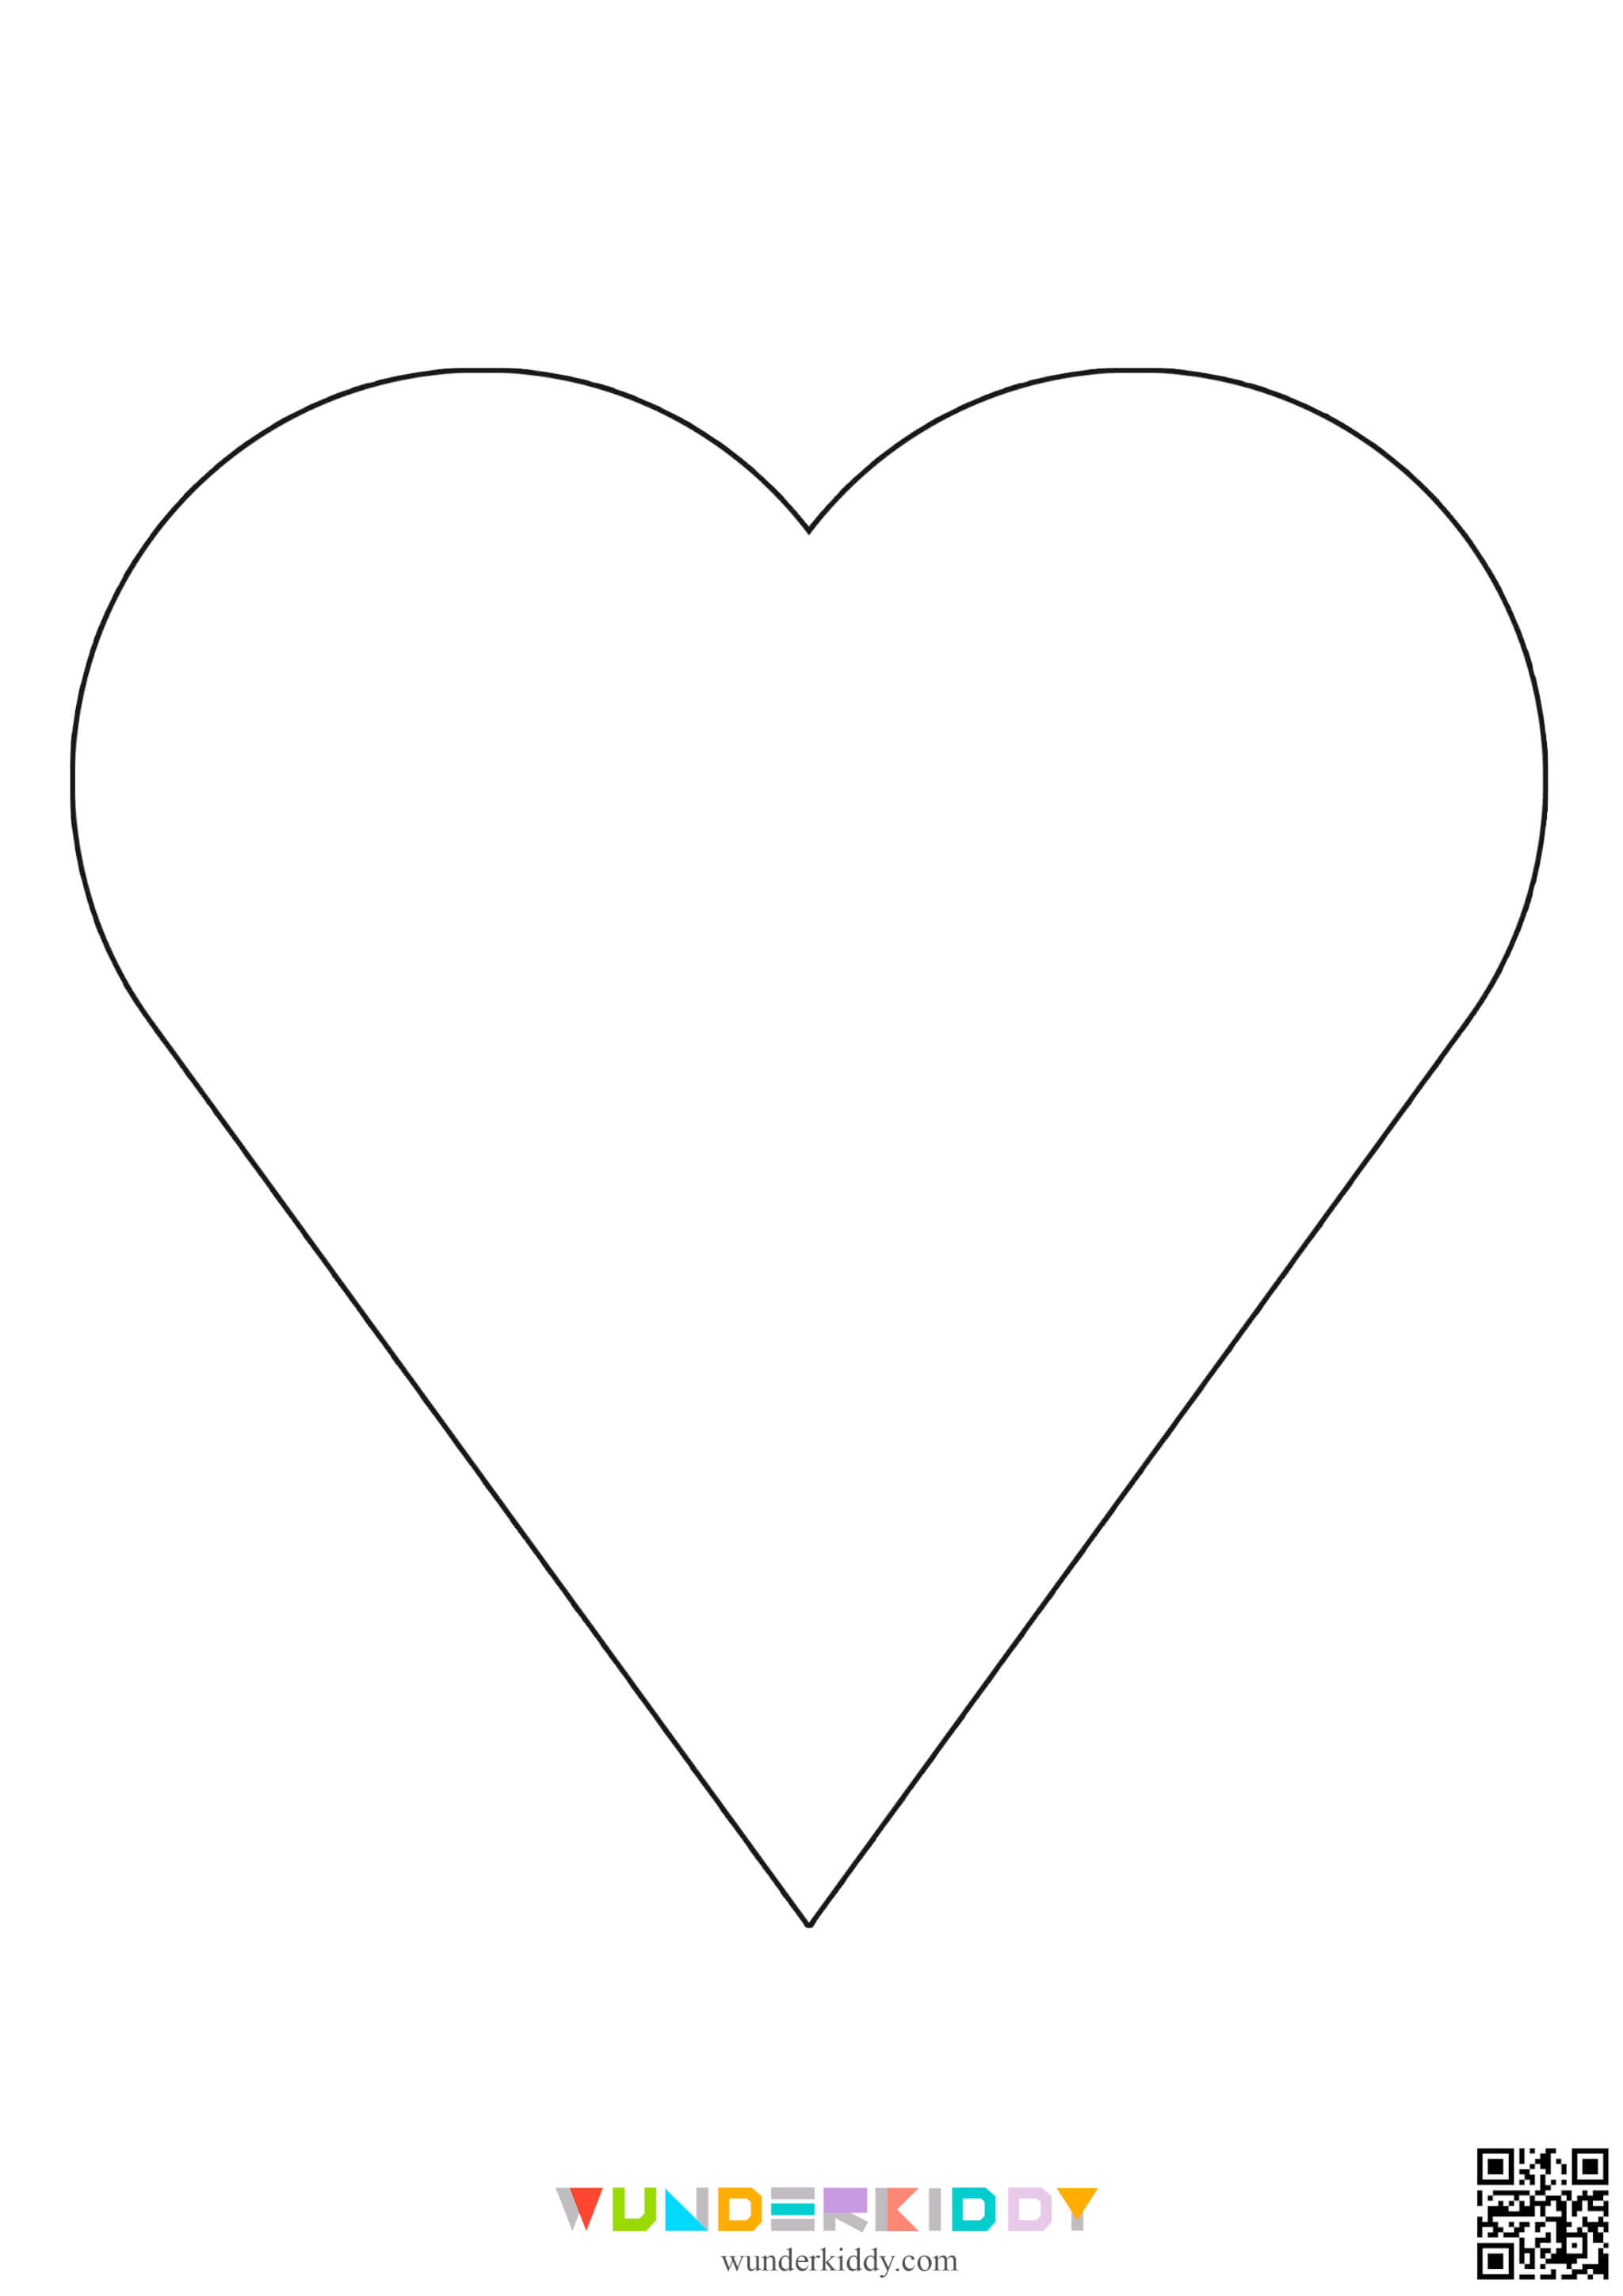 Контуры и шаблоны «Сердечки» для вырезания - Изображение 5